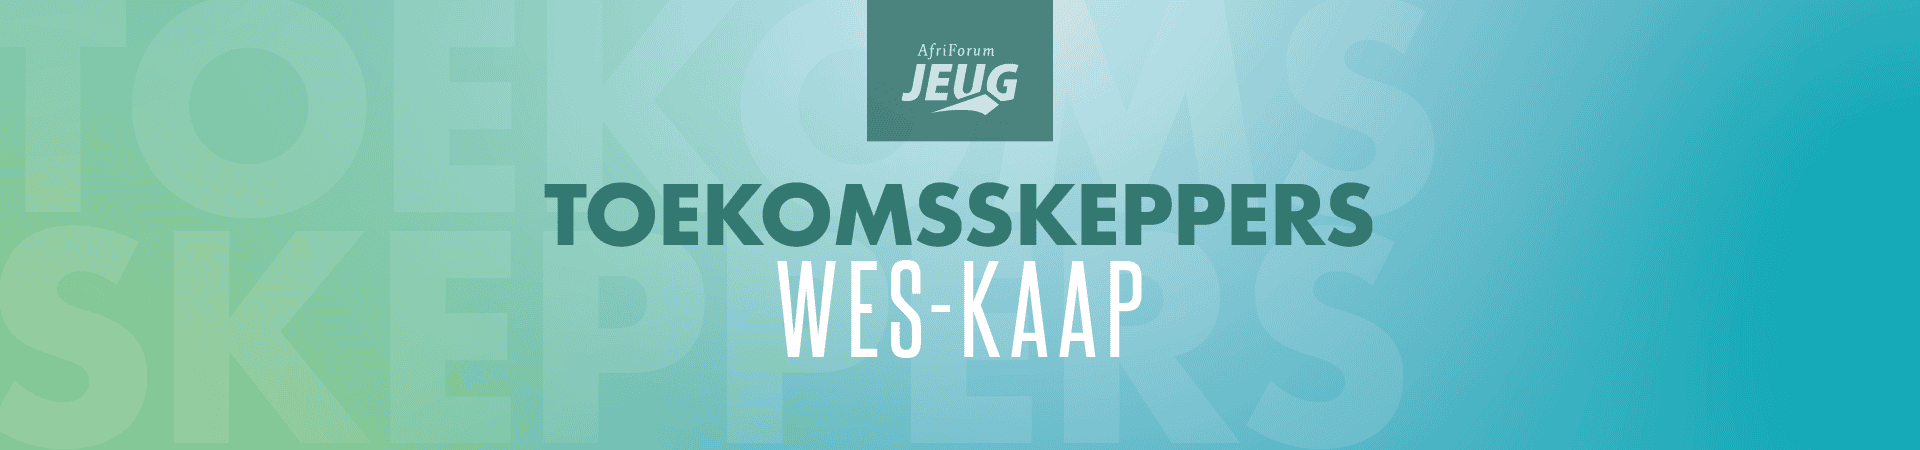 Toekomsskeppers-Wes-KaapAfr